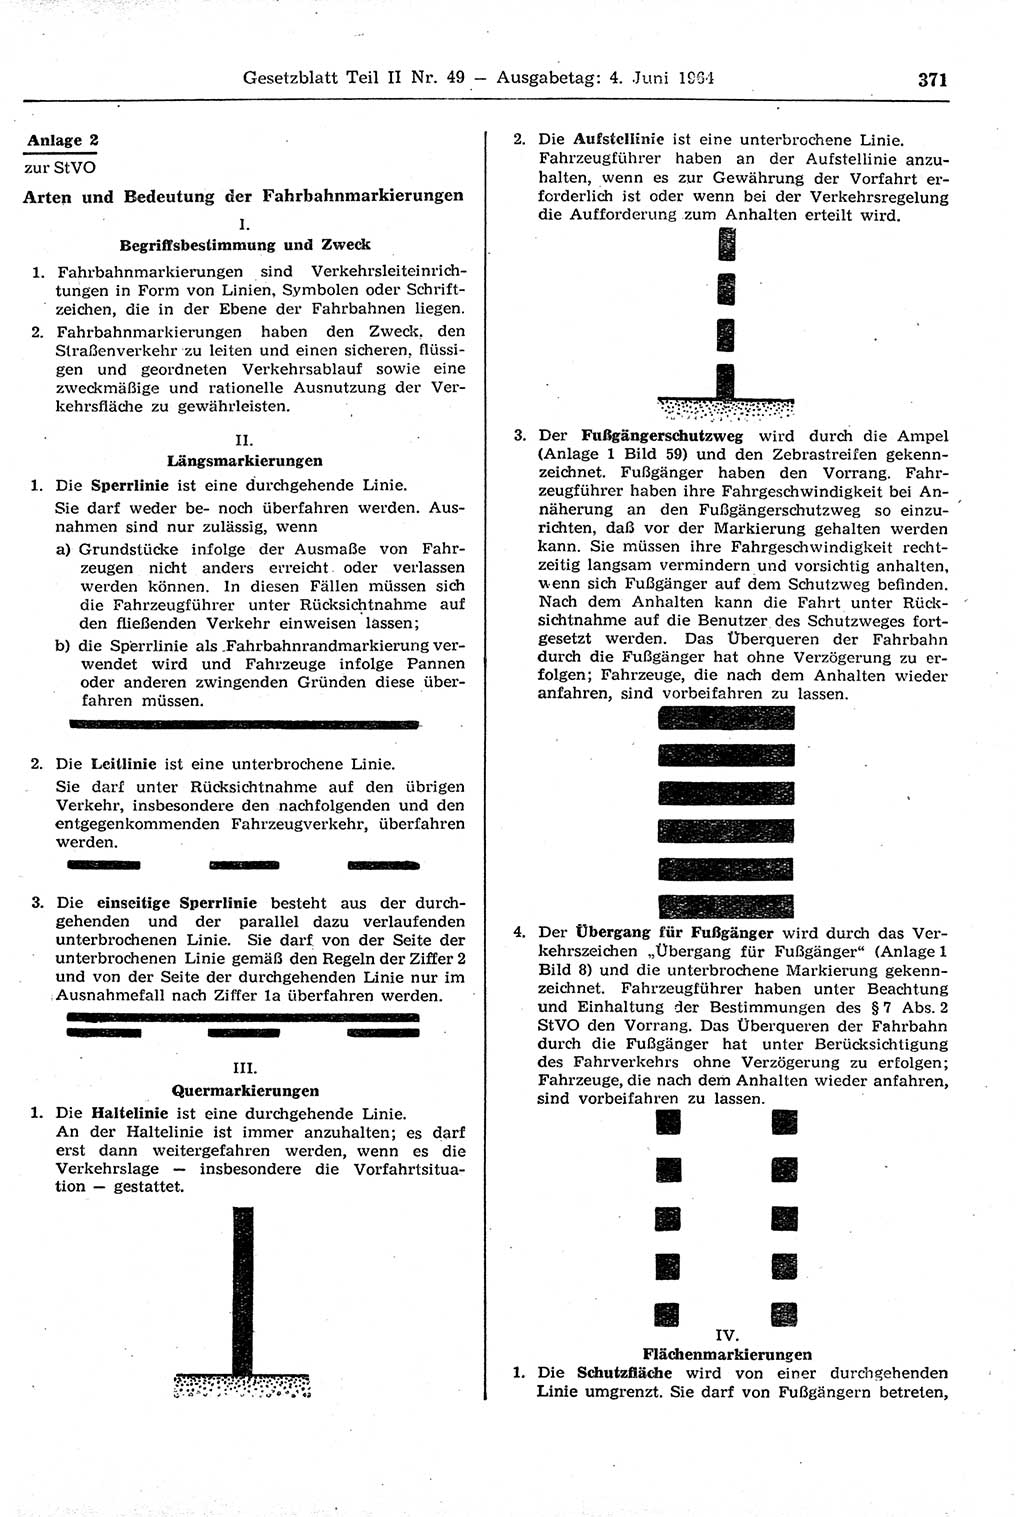 Gesetzblatt (GBl.) der Deutschen Demokratischen Republik (DDR) Teil ⅠⅠ 1964, Seite 371 (GBl. DDR ⅠⅠ 1964, S. 371)